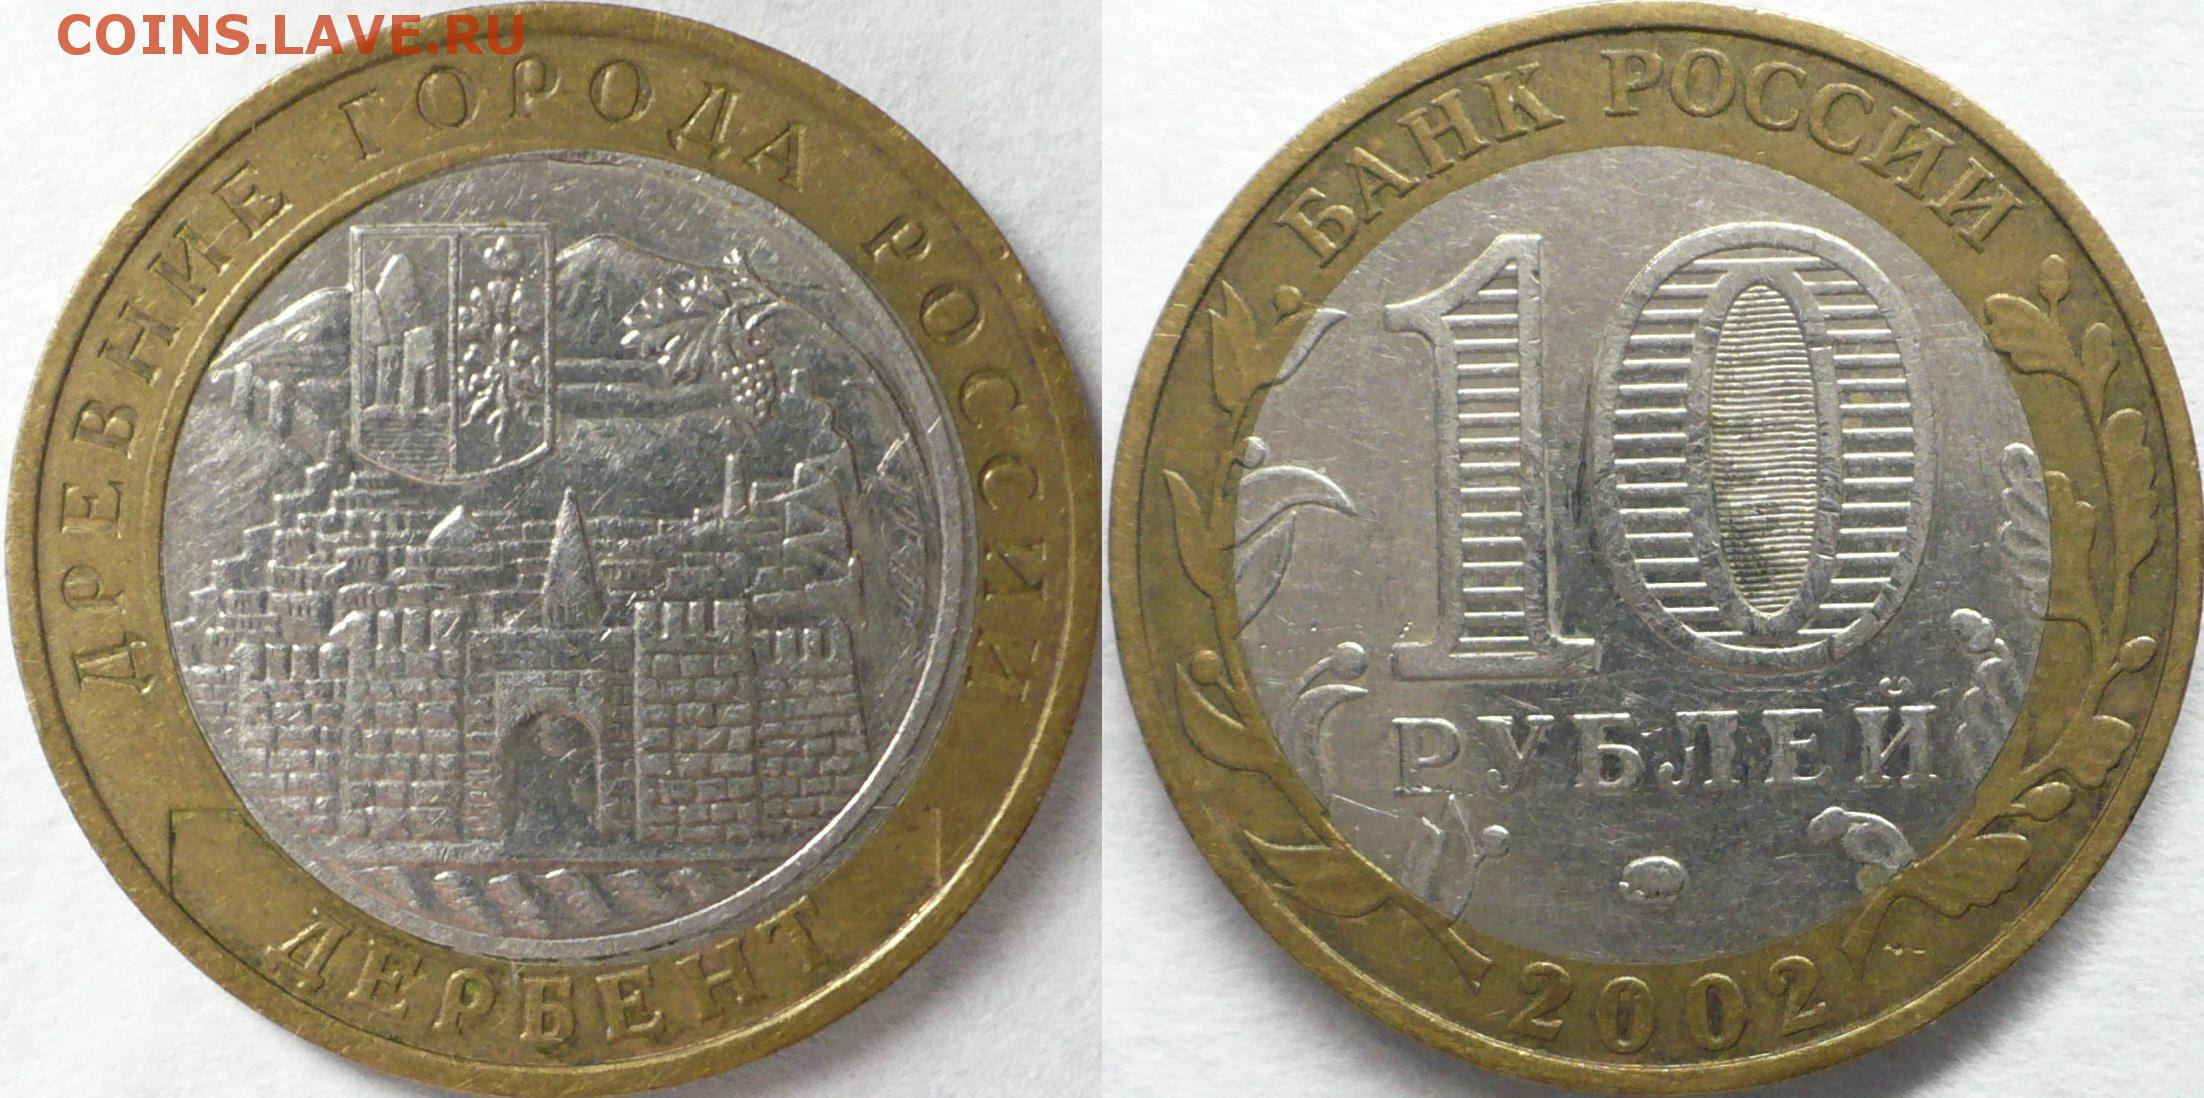 10 руб 2000 год. 10 Рублей 2005 года. Монета 10 рублей 2000. Монета 10 рублей 2005 года. Редкие юбилейные монеты 10 рублей 2005.